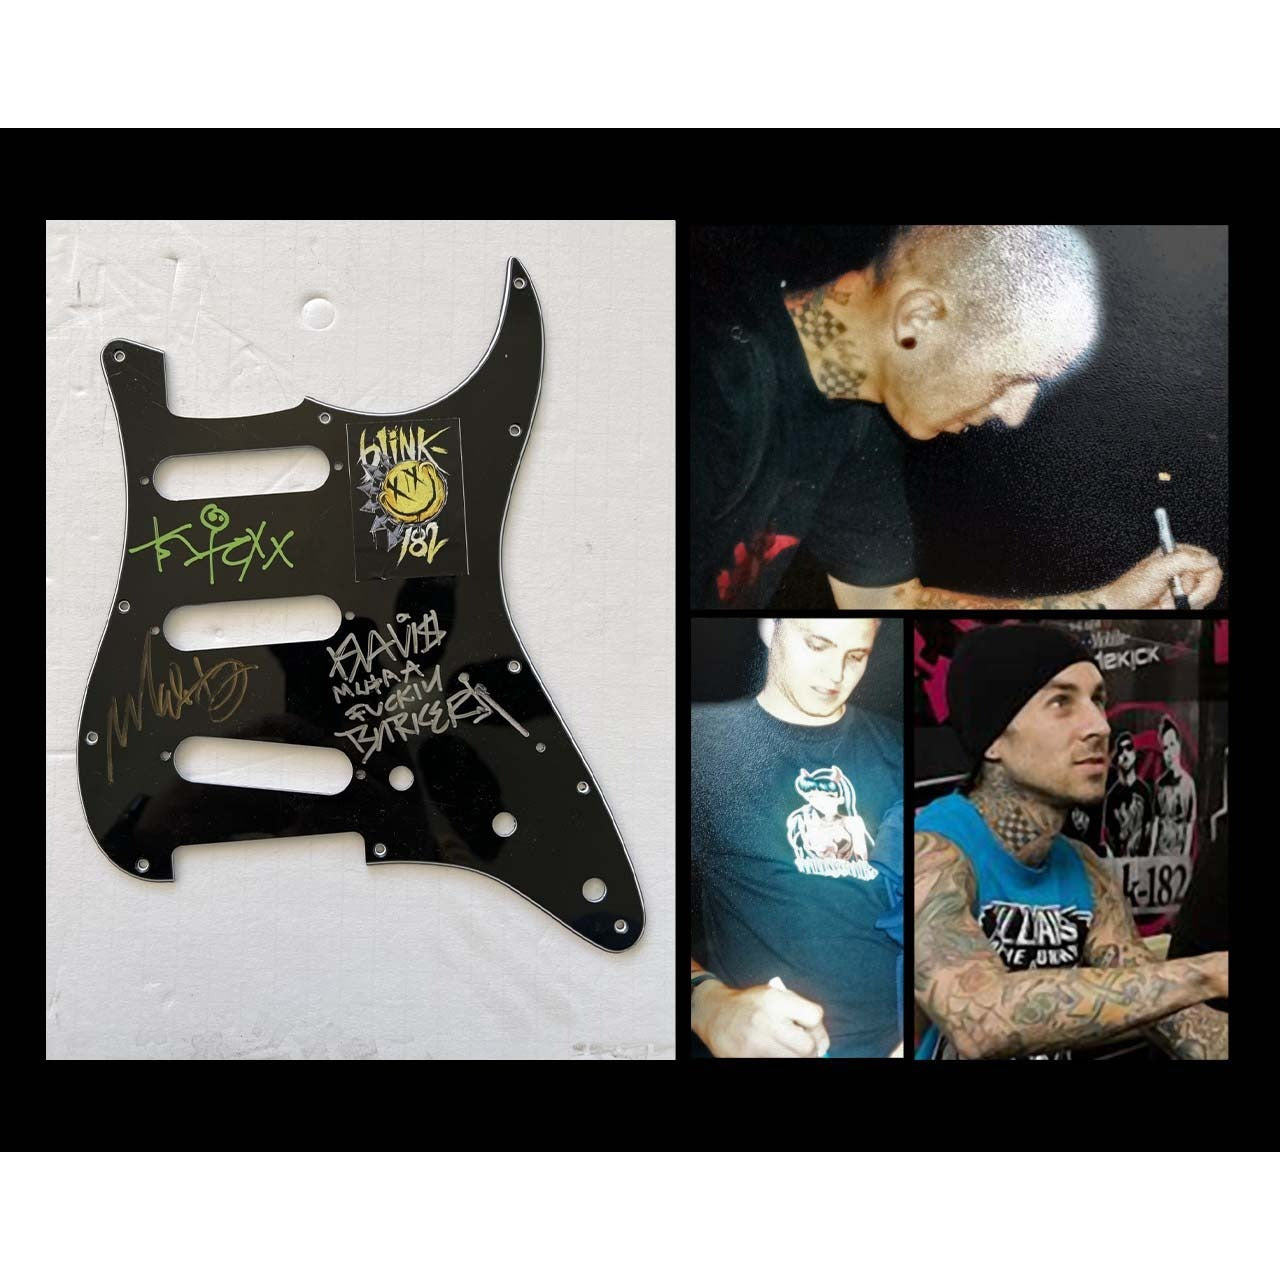 Blink 182 Mark Hoppus, guitarist/vocalist Tom DeLonge, and drummer Travis Barker. electric guitar pickguard signed with proof